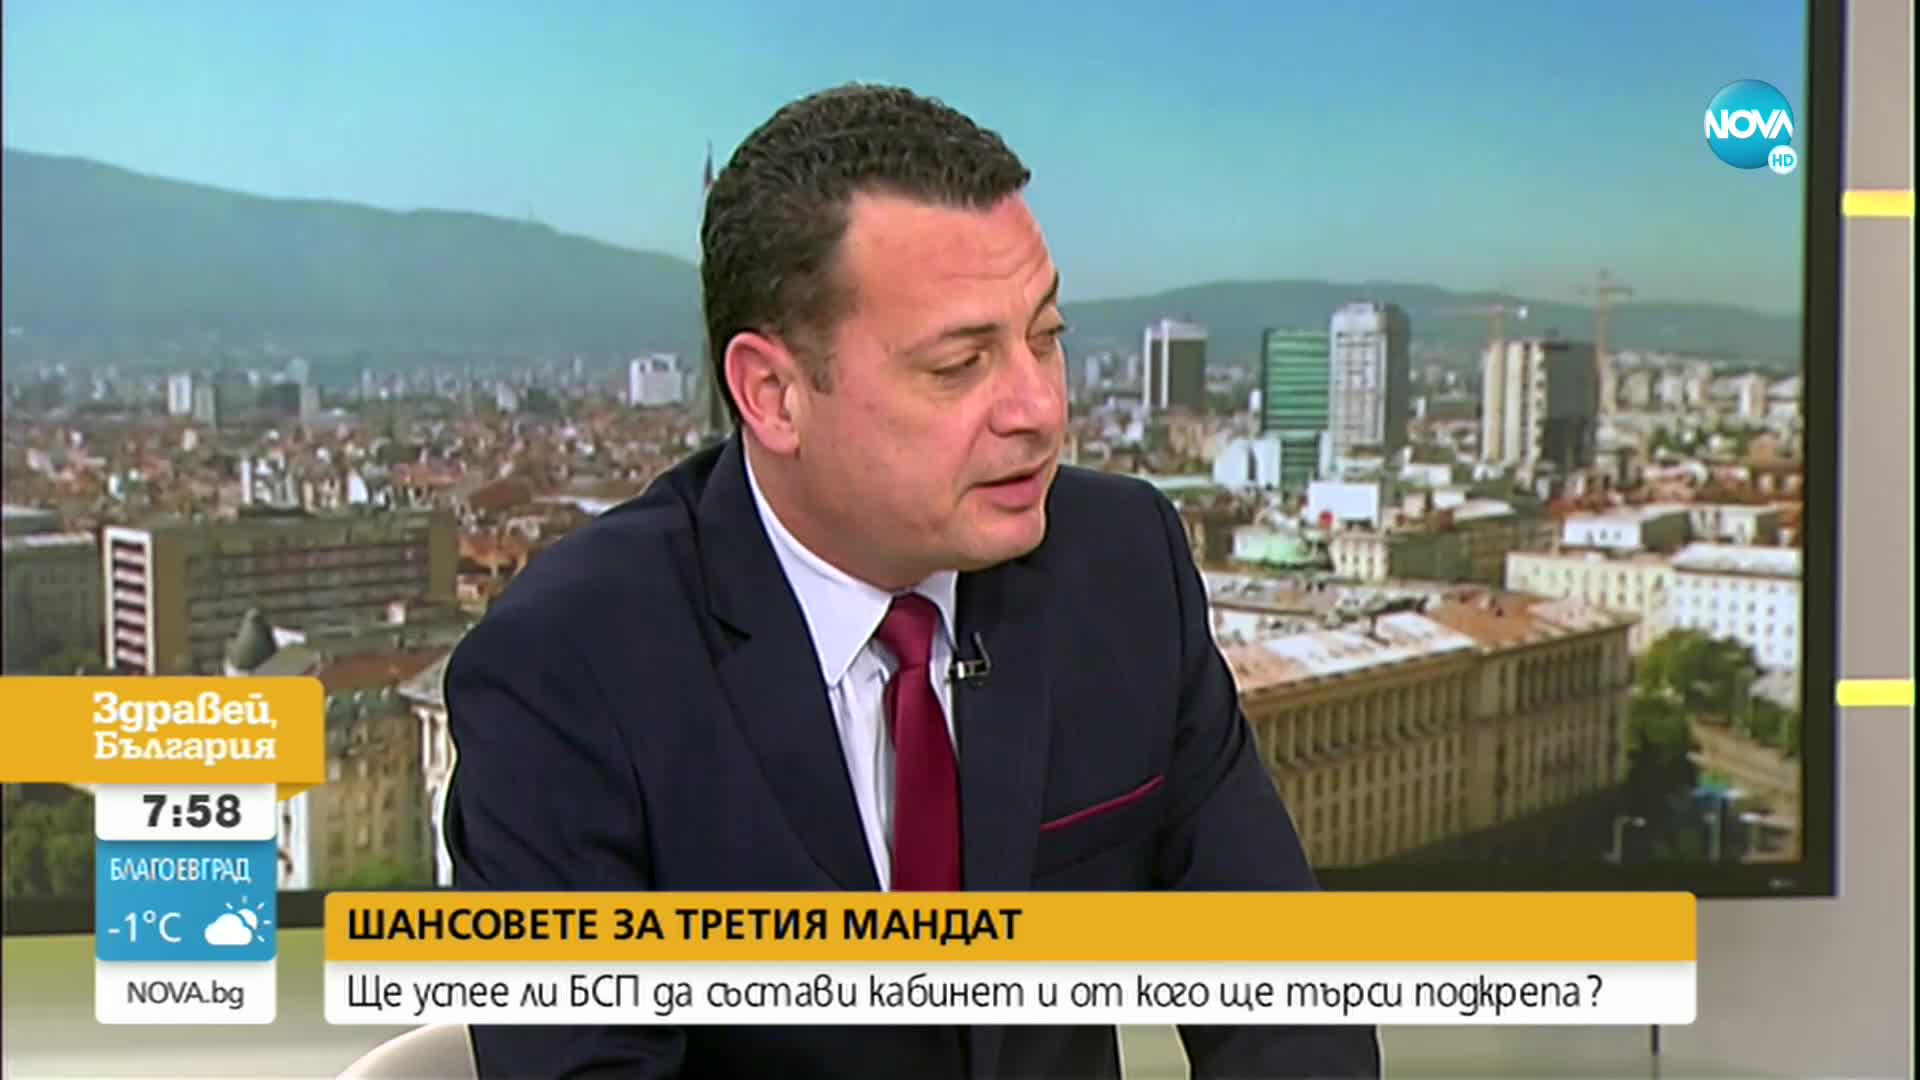 Ченчев: Третият мандат беше натоварен със свръхочаквания още след изборите през октомври